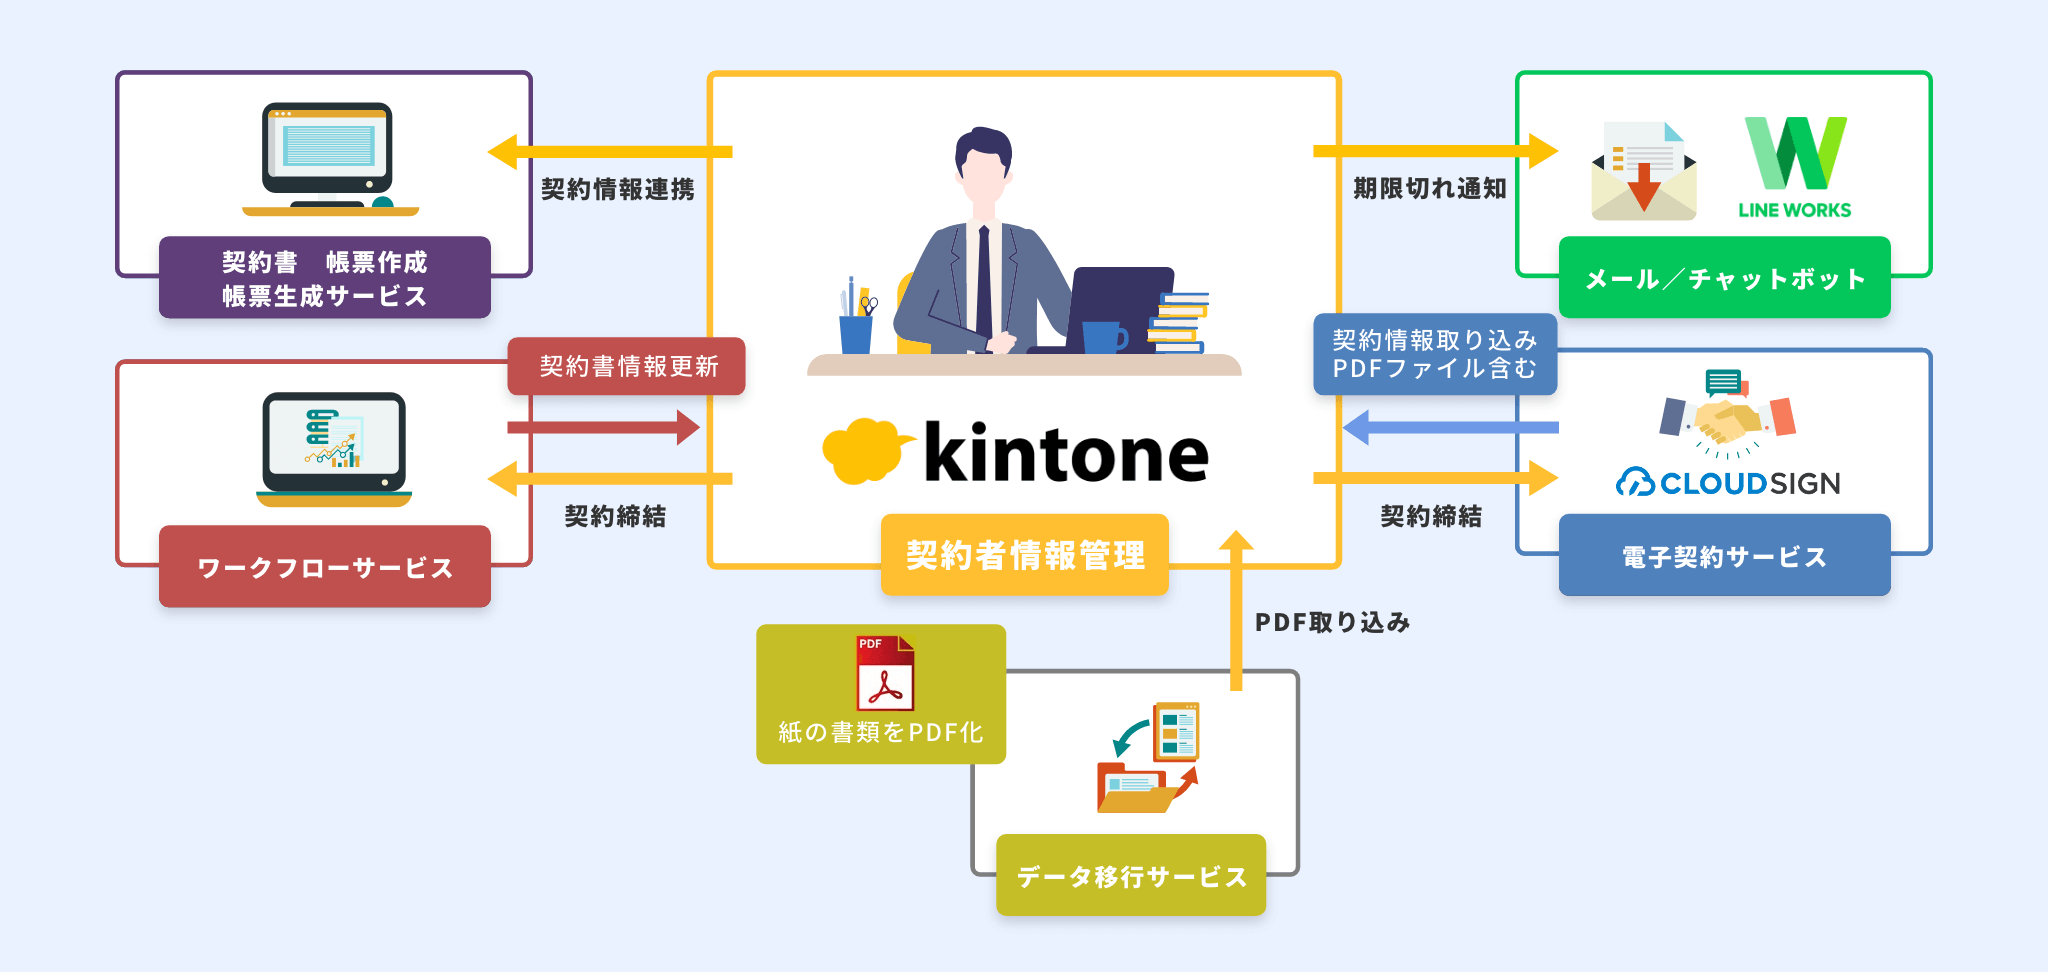 「契約書管理 on kintone」の連携図